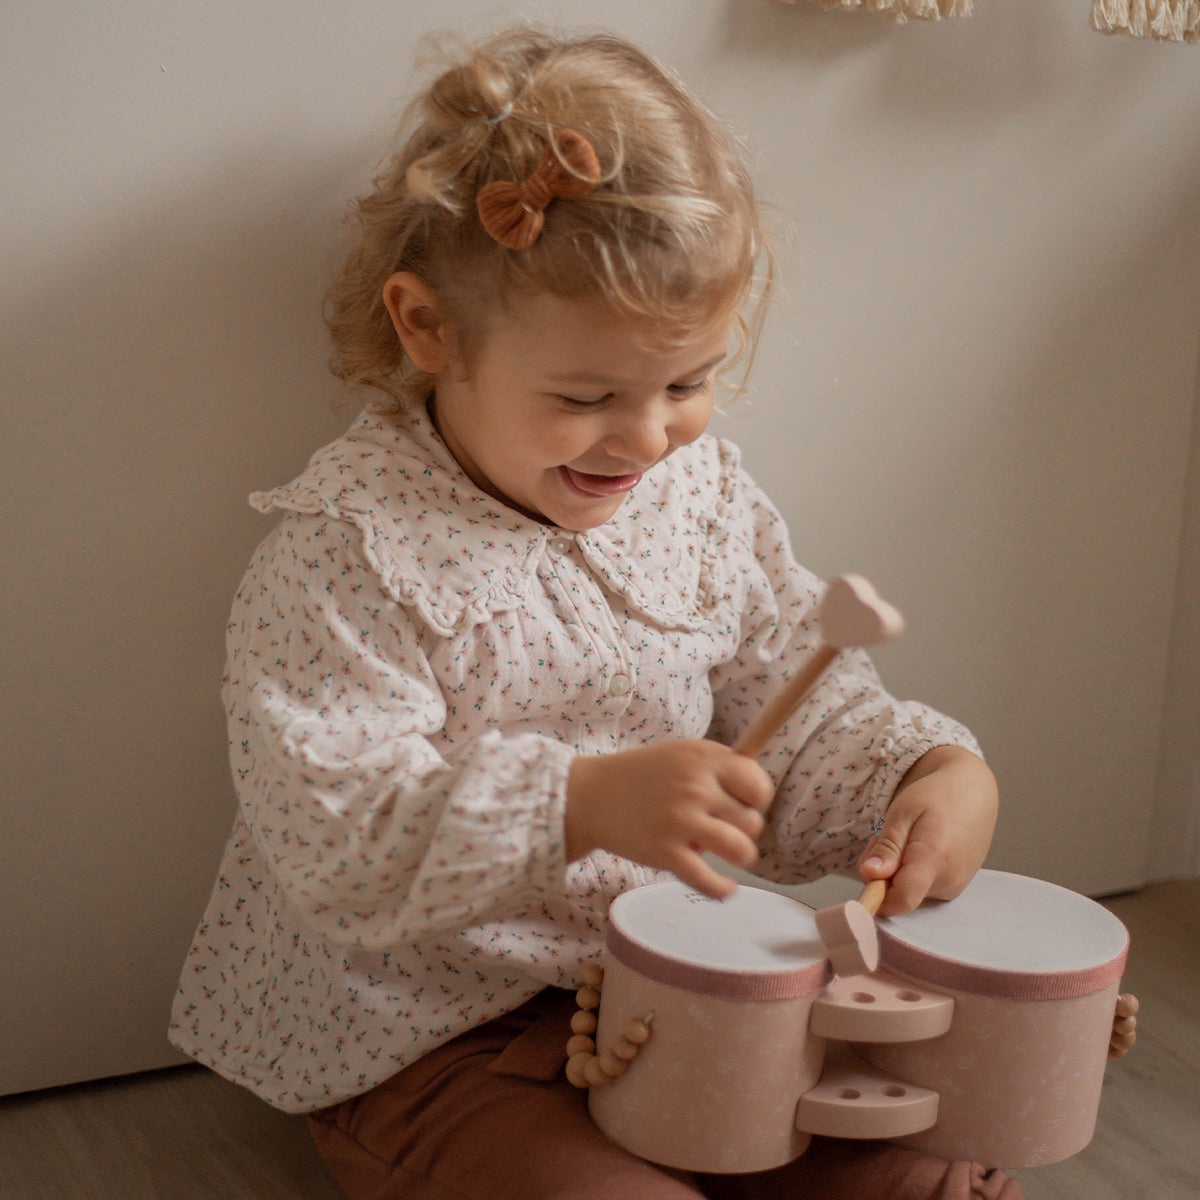 Laat je kindje kennis maken met muziek met deze fantastische houten bongo's in de kleur roze van het leuke merk Label Label. Deze prachtige bongo's zijn niet alleen leuk om mee te spelen, maar zien er ook fantastisch uit! VanZus